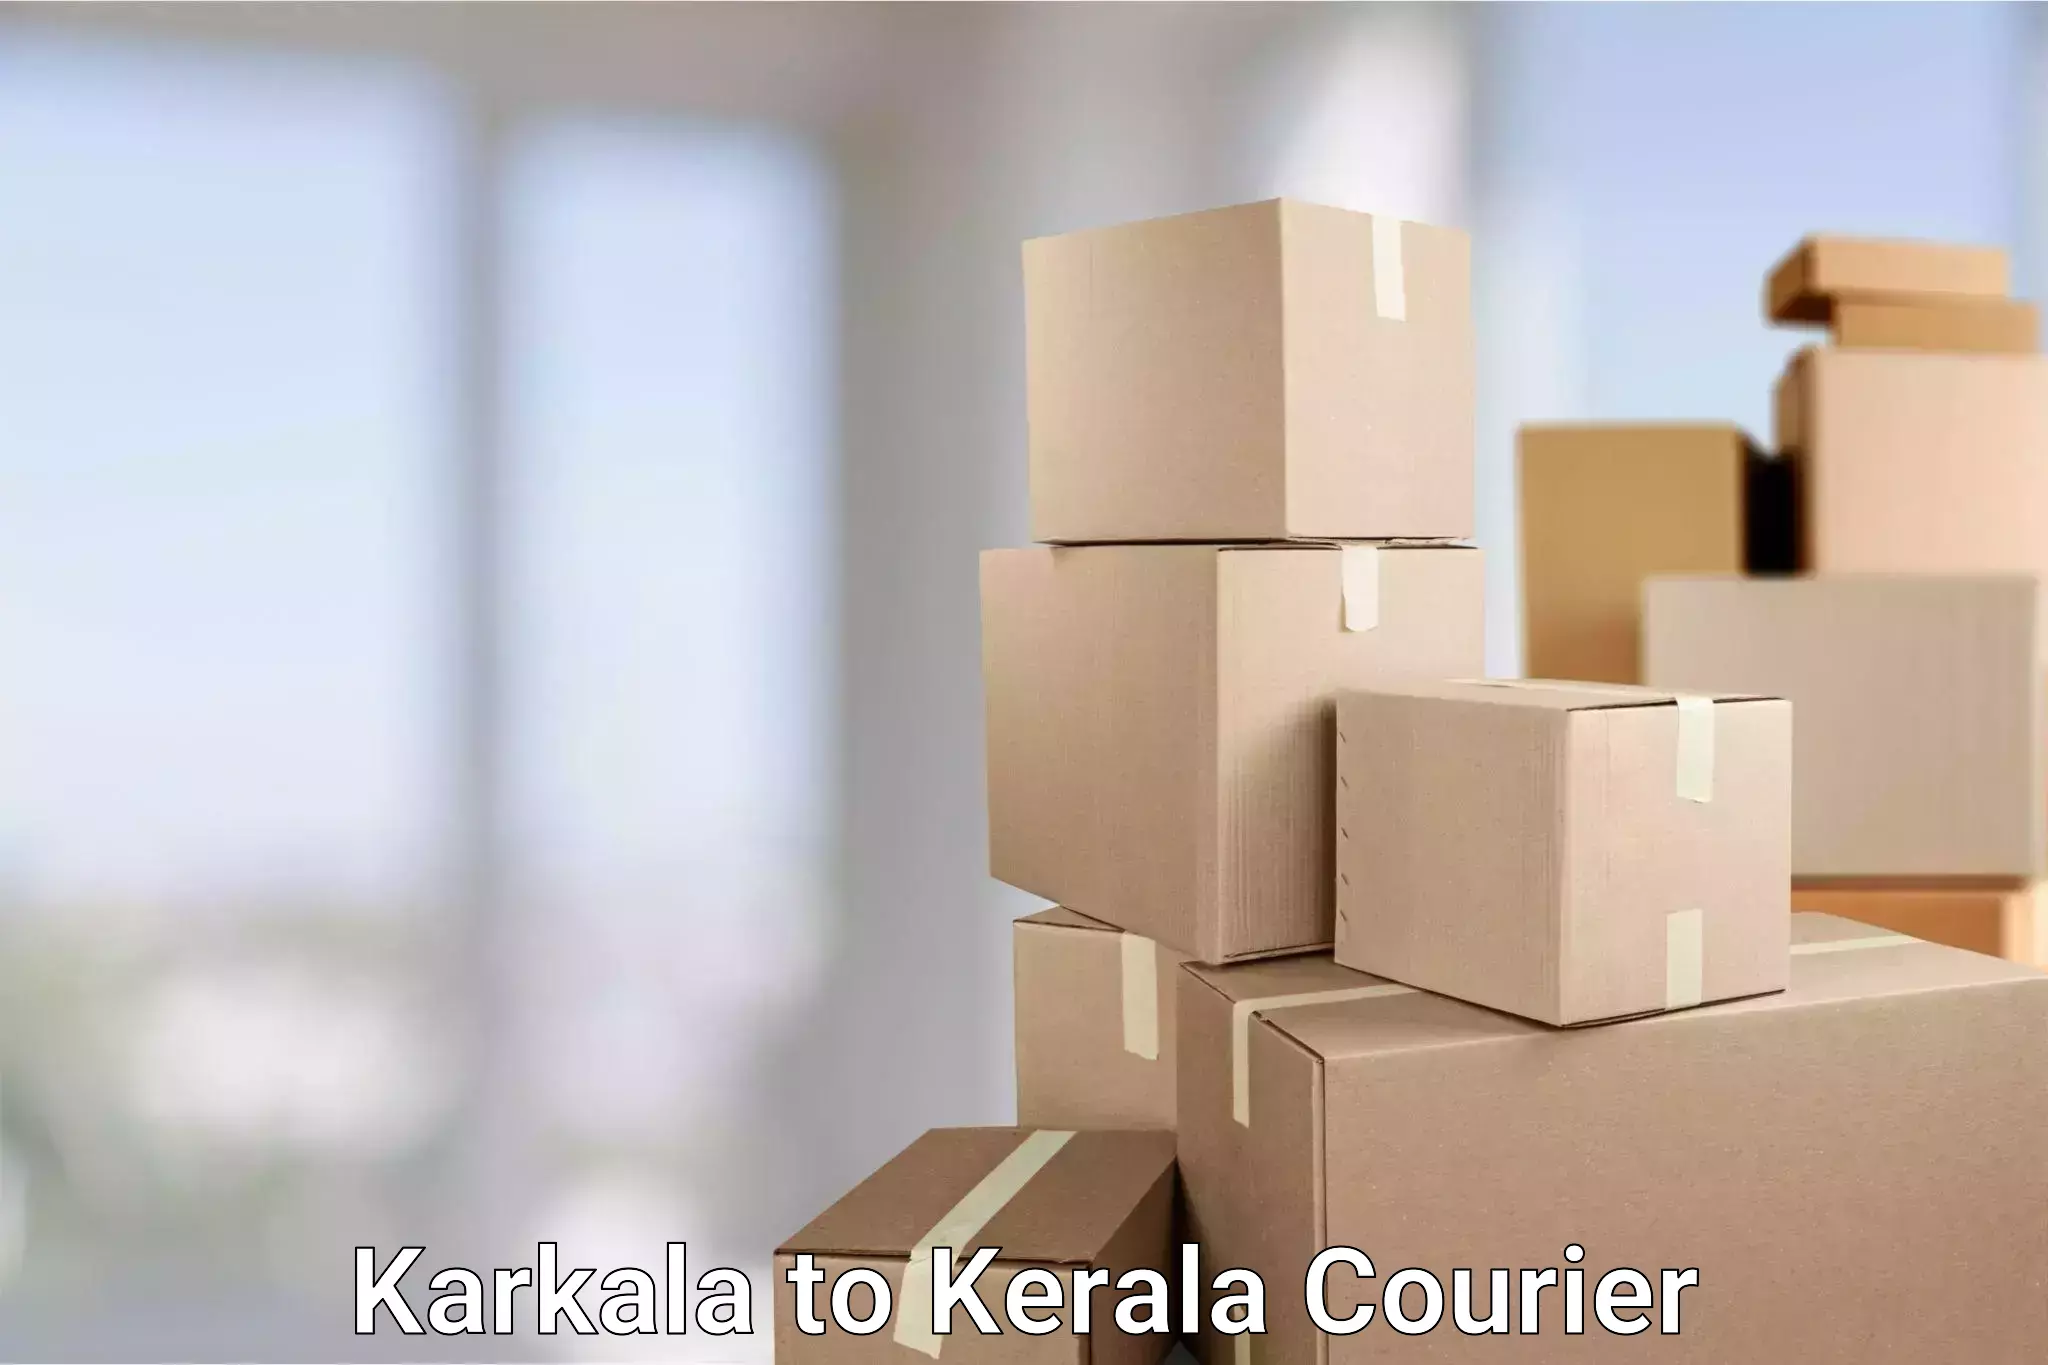 Express delivery capabilities Karkala to Kumily